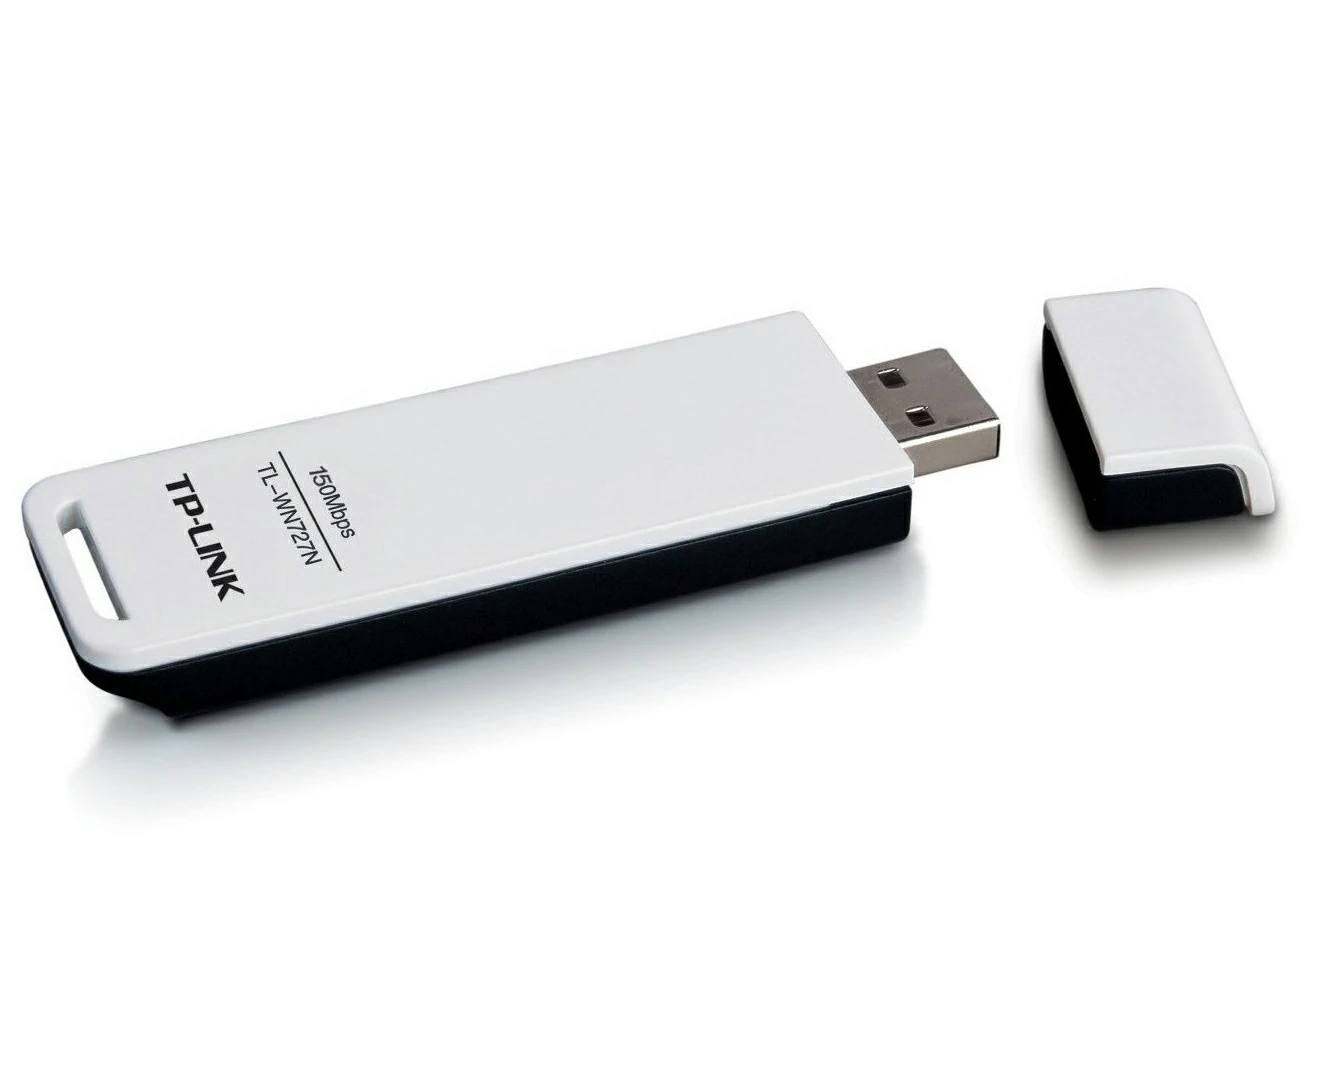 Bộ chuyển đổi USB chuẩn N không dây tốc độ 150Mbps TL-WN727N 3